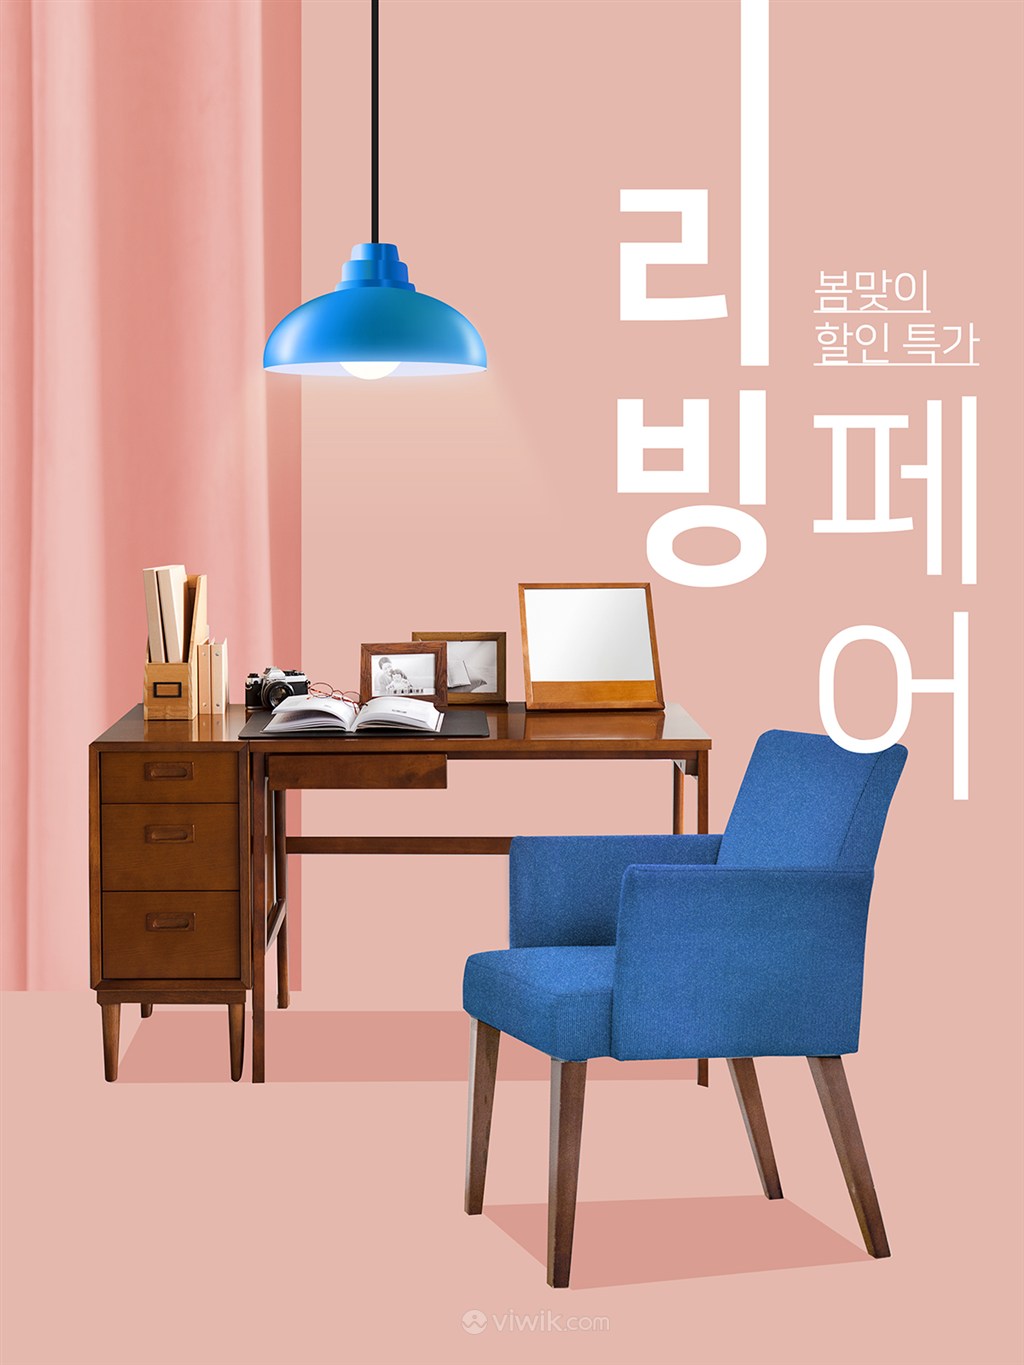 韩国古典风办公桌上新促销电商海报